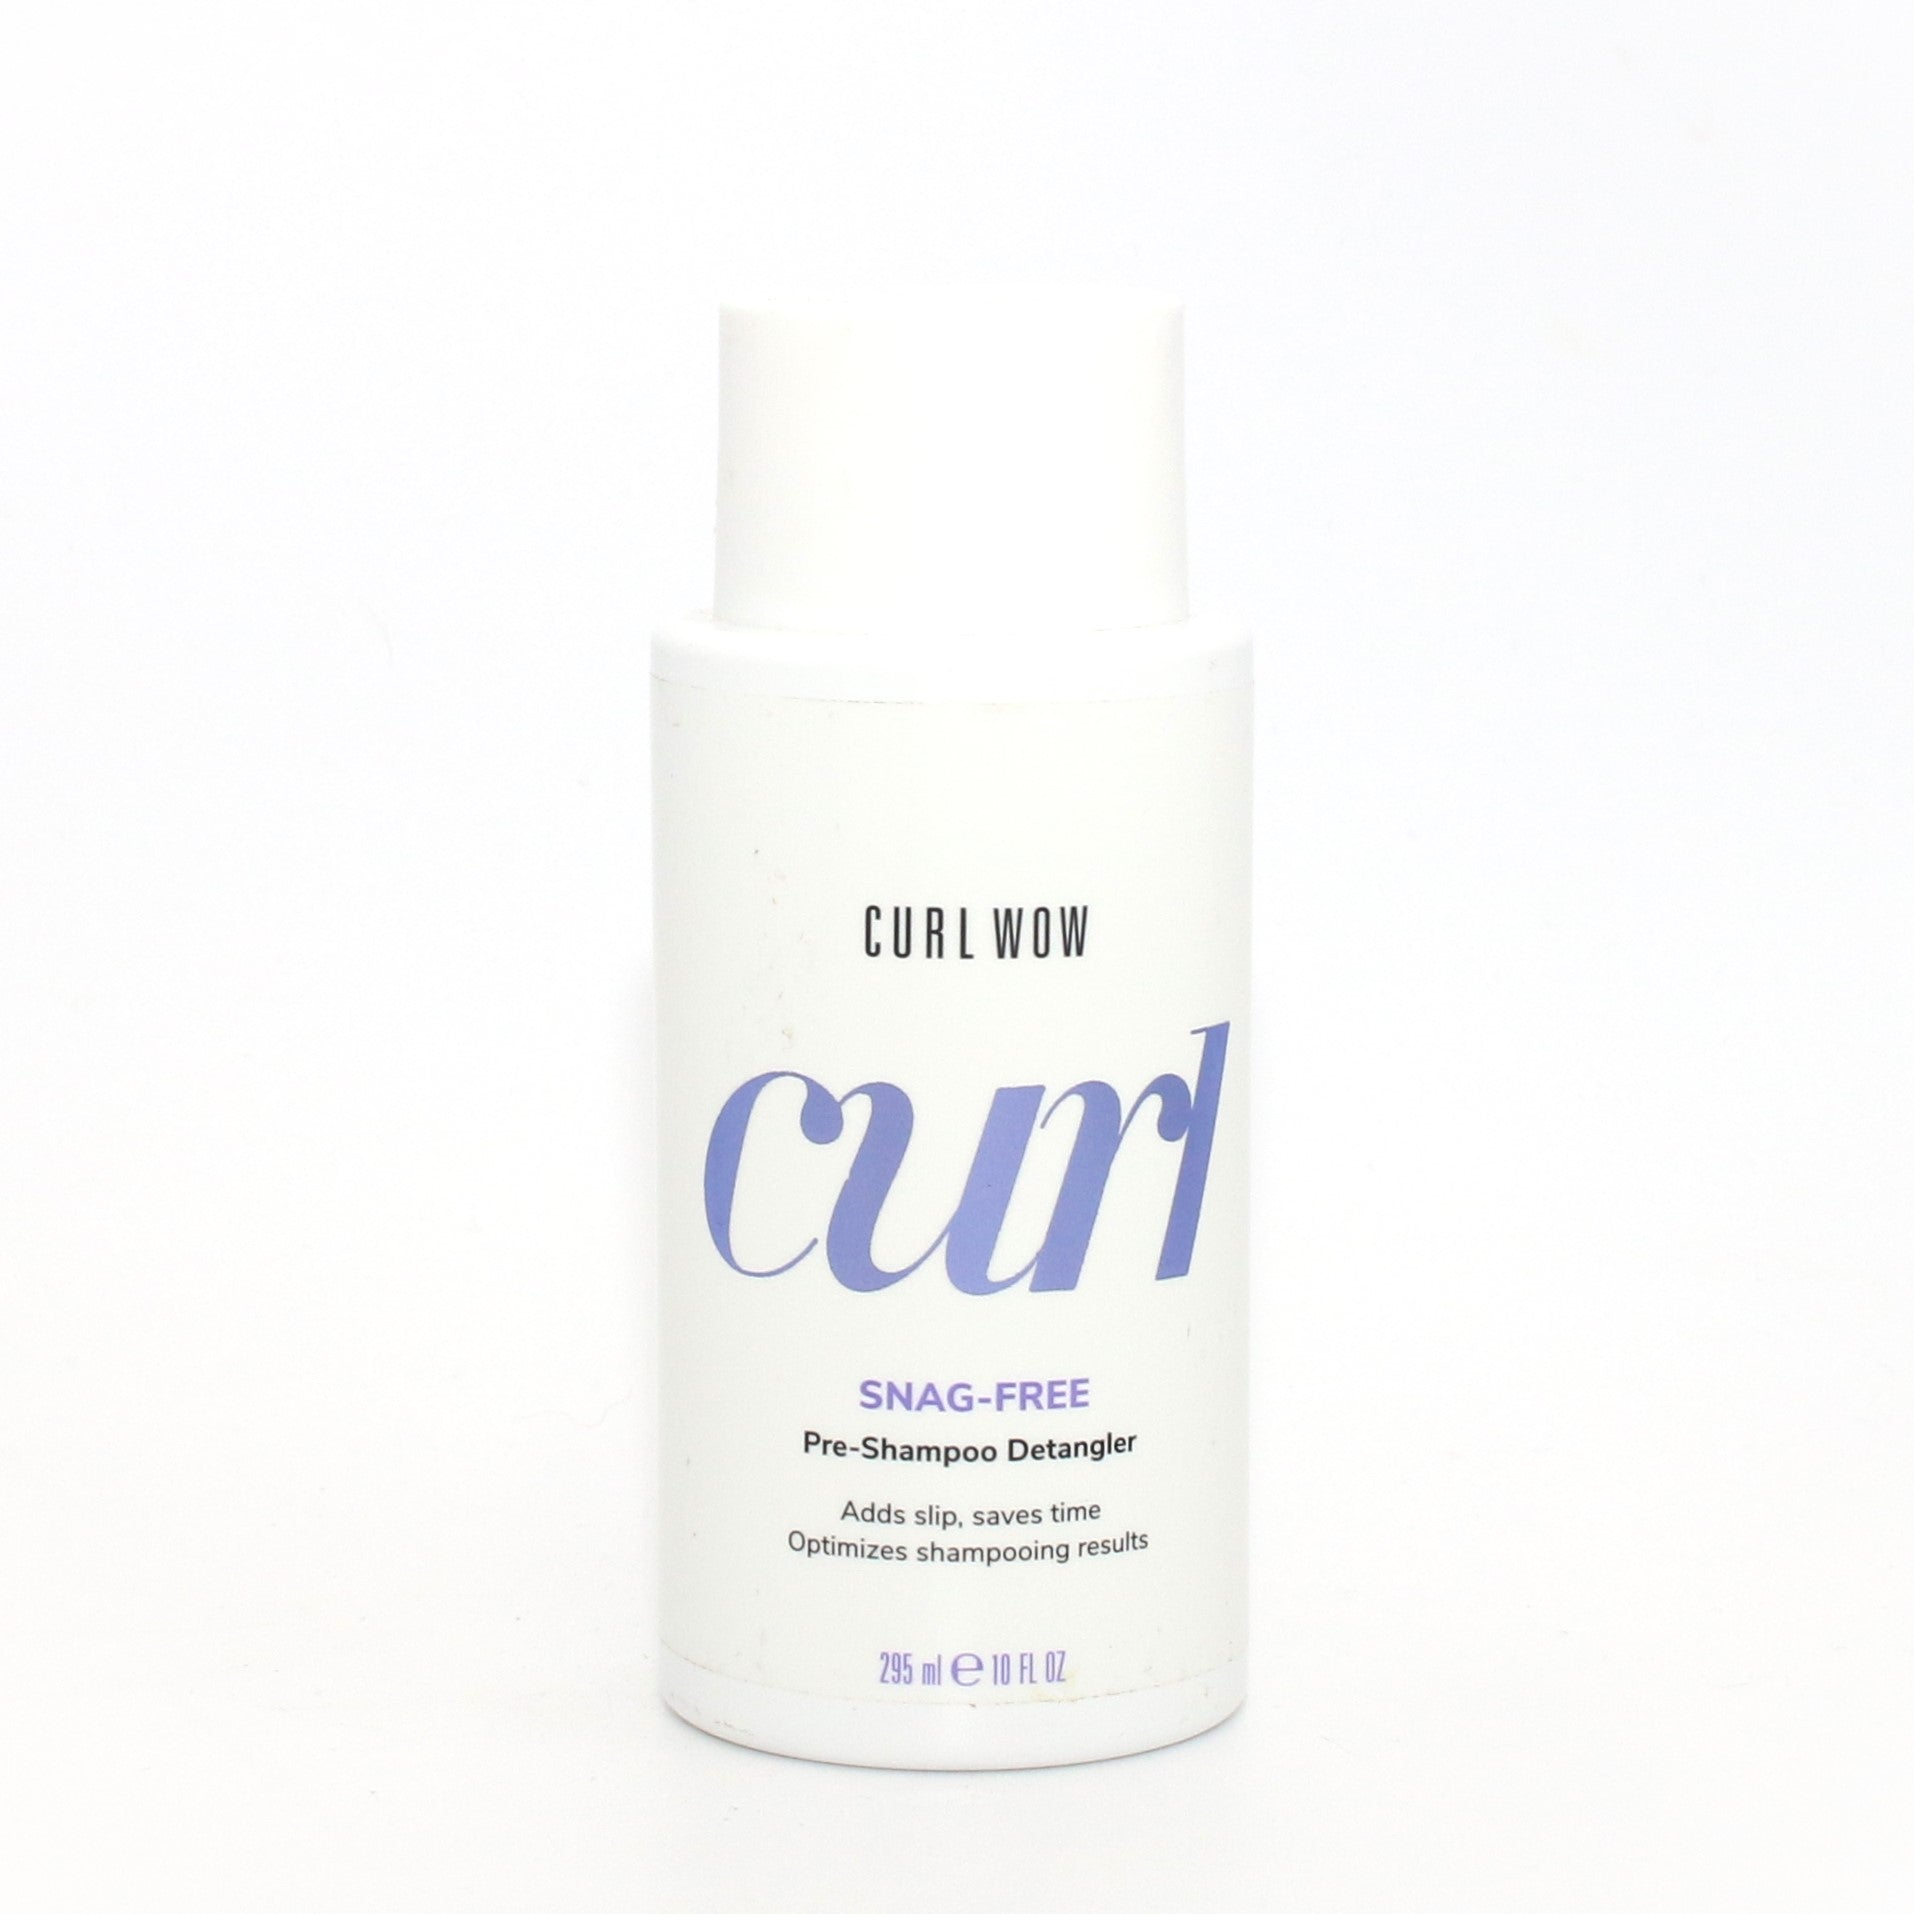 Color Wow Curl Snag Free Pre Shampoo Detangler 10 oz